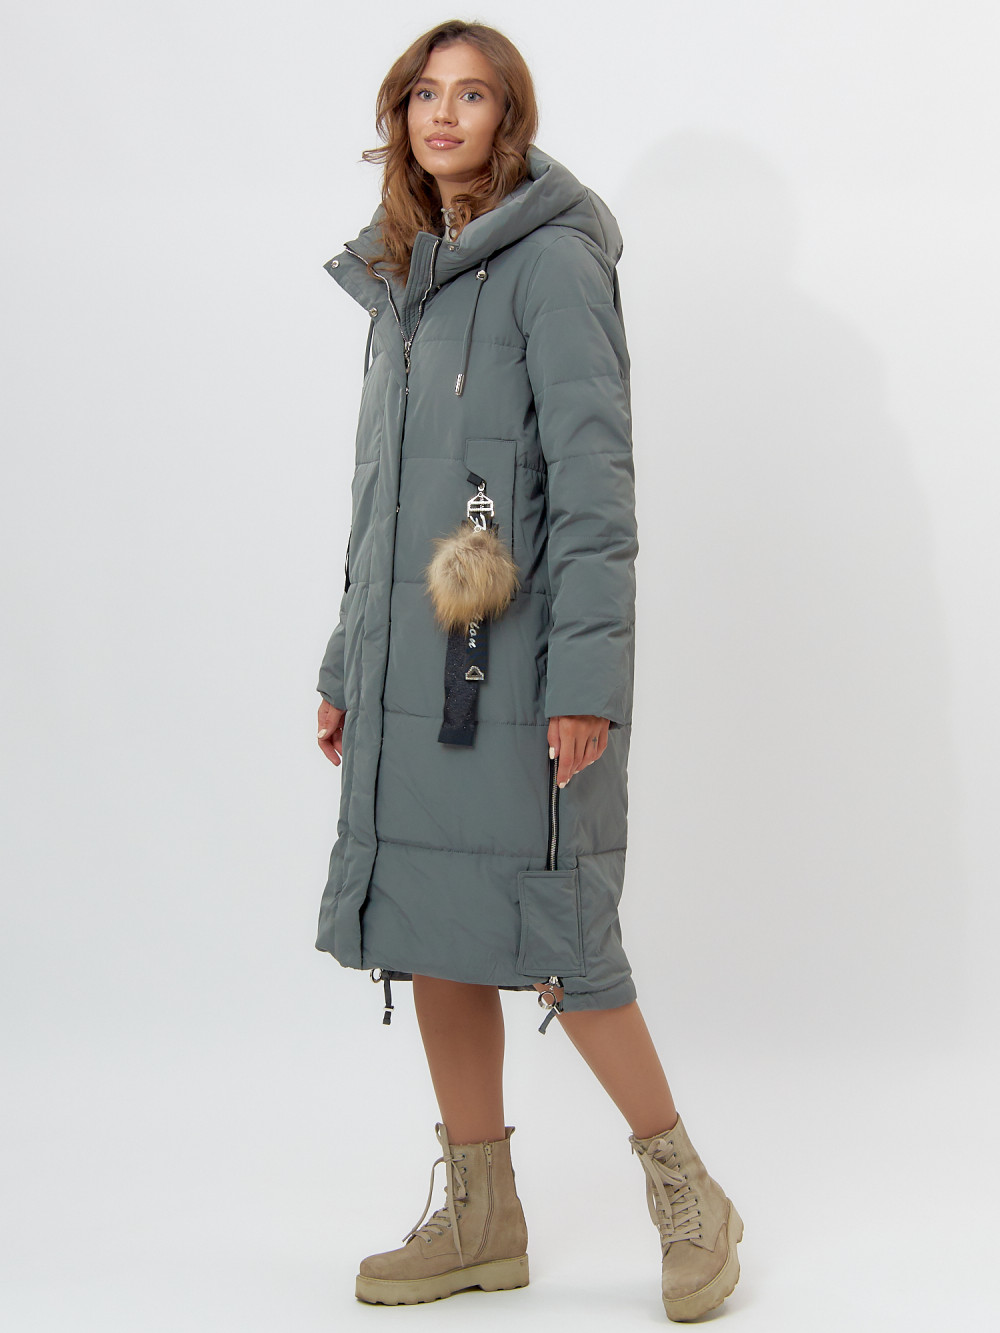 Купить оптом Пальто утепленное женское зимние цвета хаки 11207Kh, фото 2